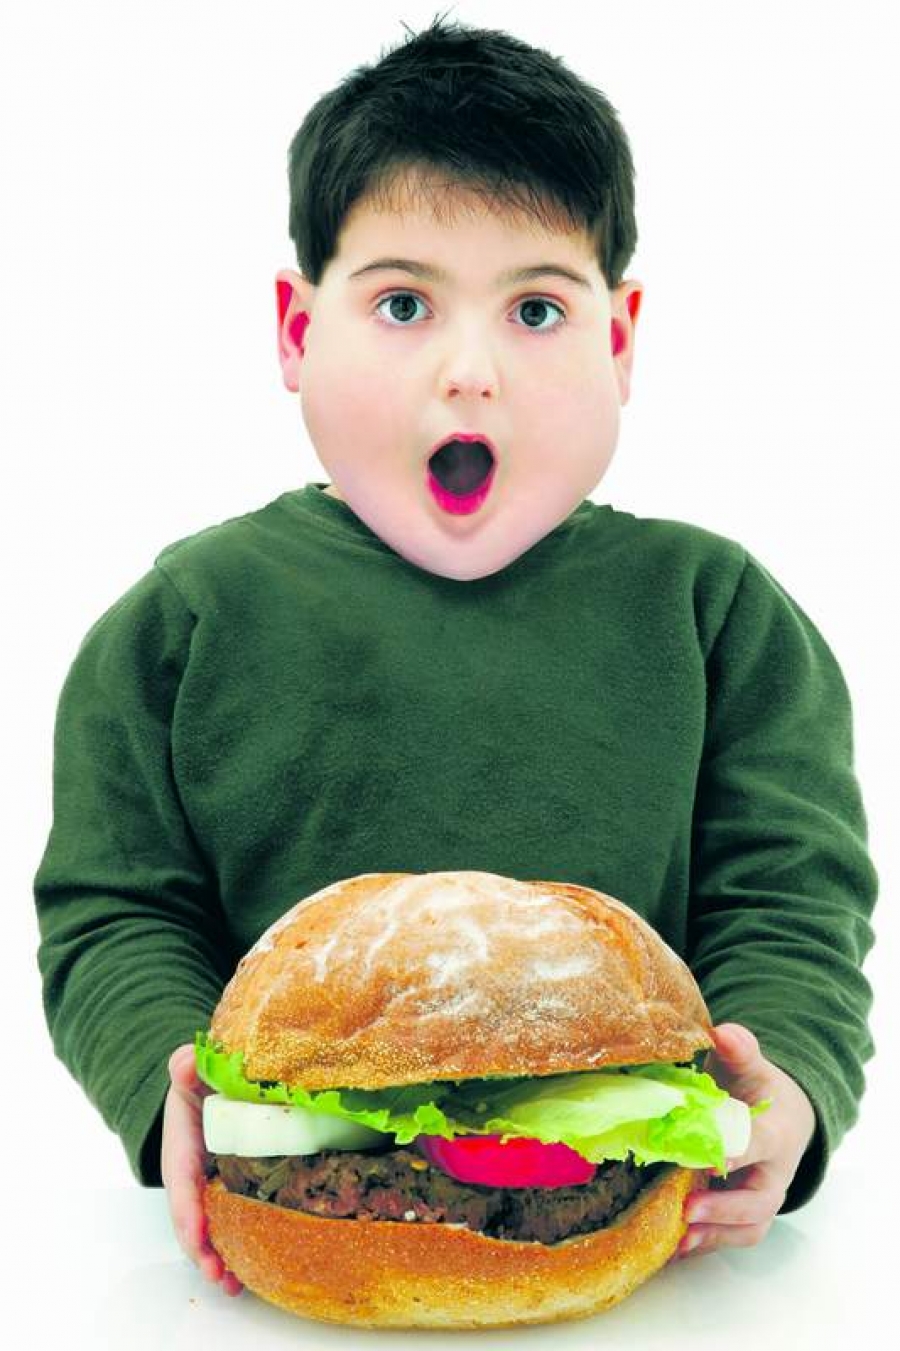 Obezitatea infantilă, "coşmar exploziv" în ţările în curs de dezvoltare